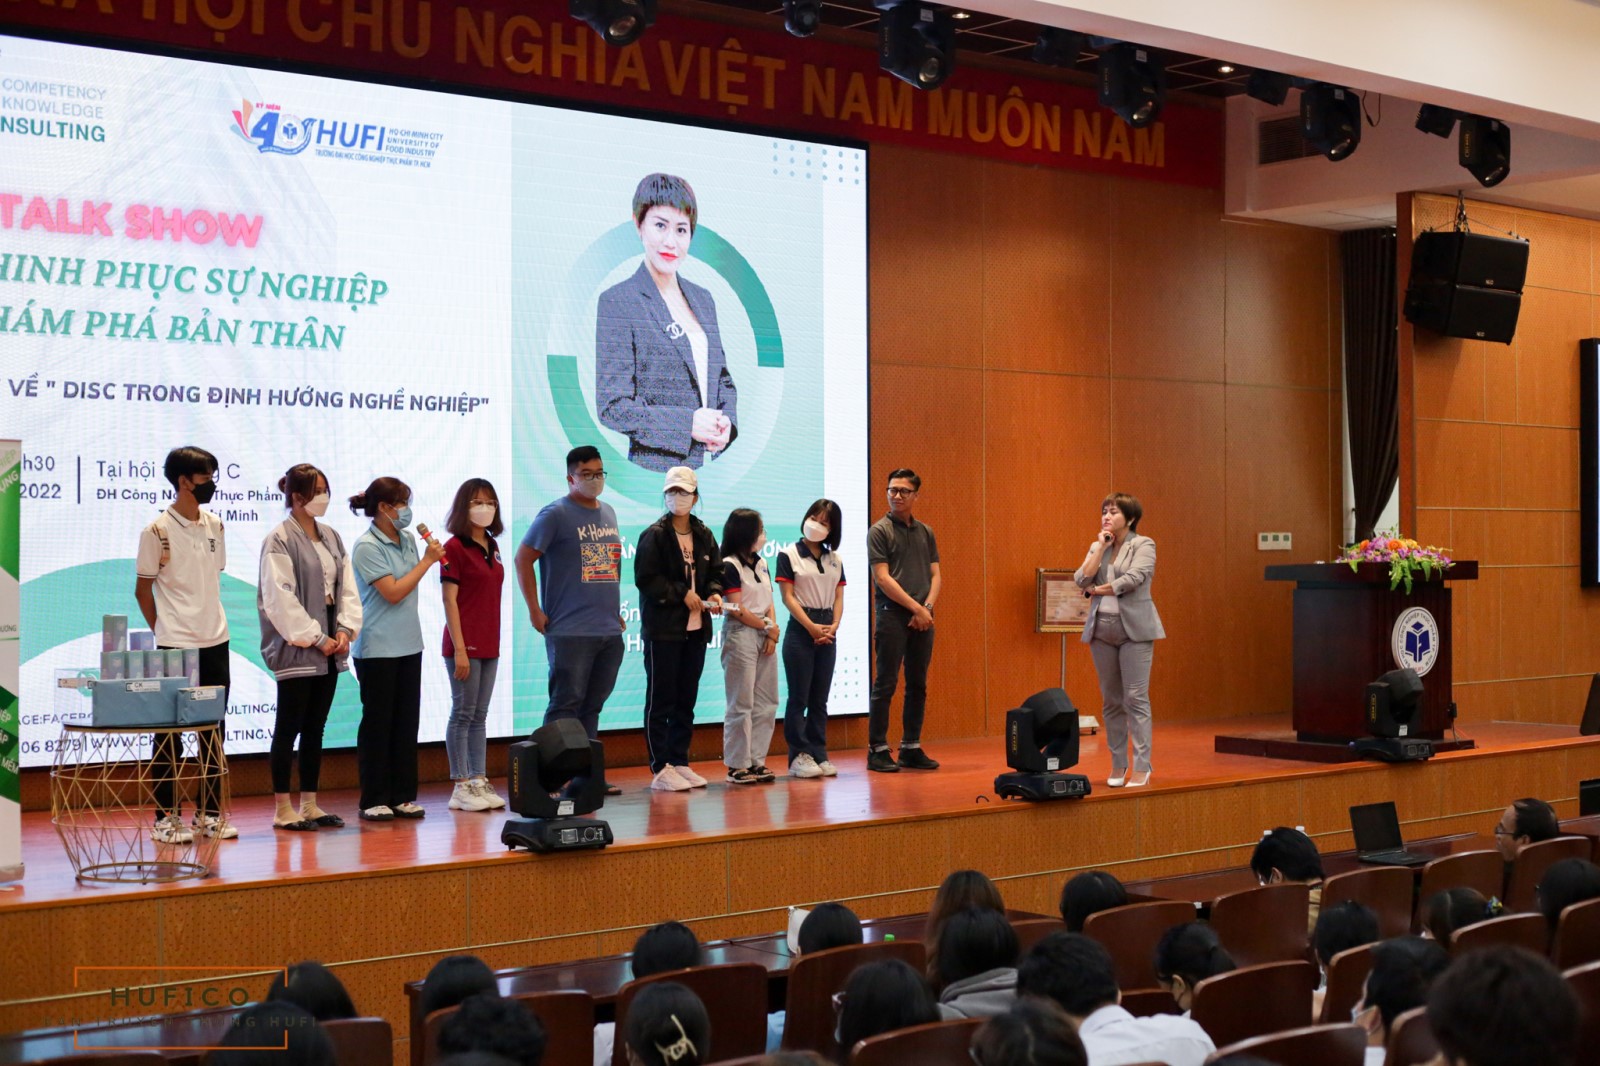 HUFI Talent Day: Workshop " Chinh phục sự nghiệp - Khám phá bản thân"